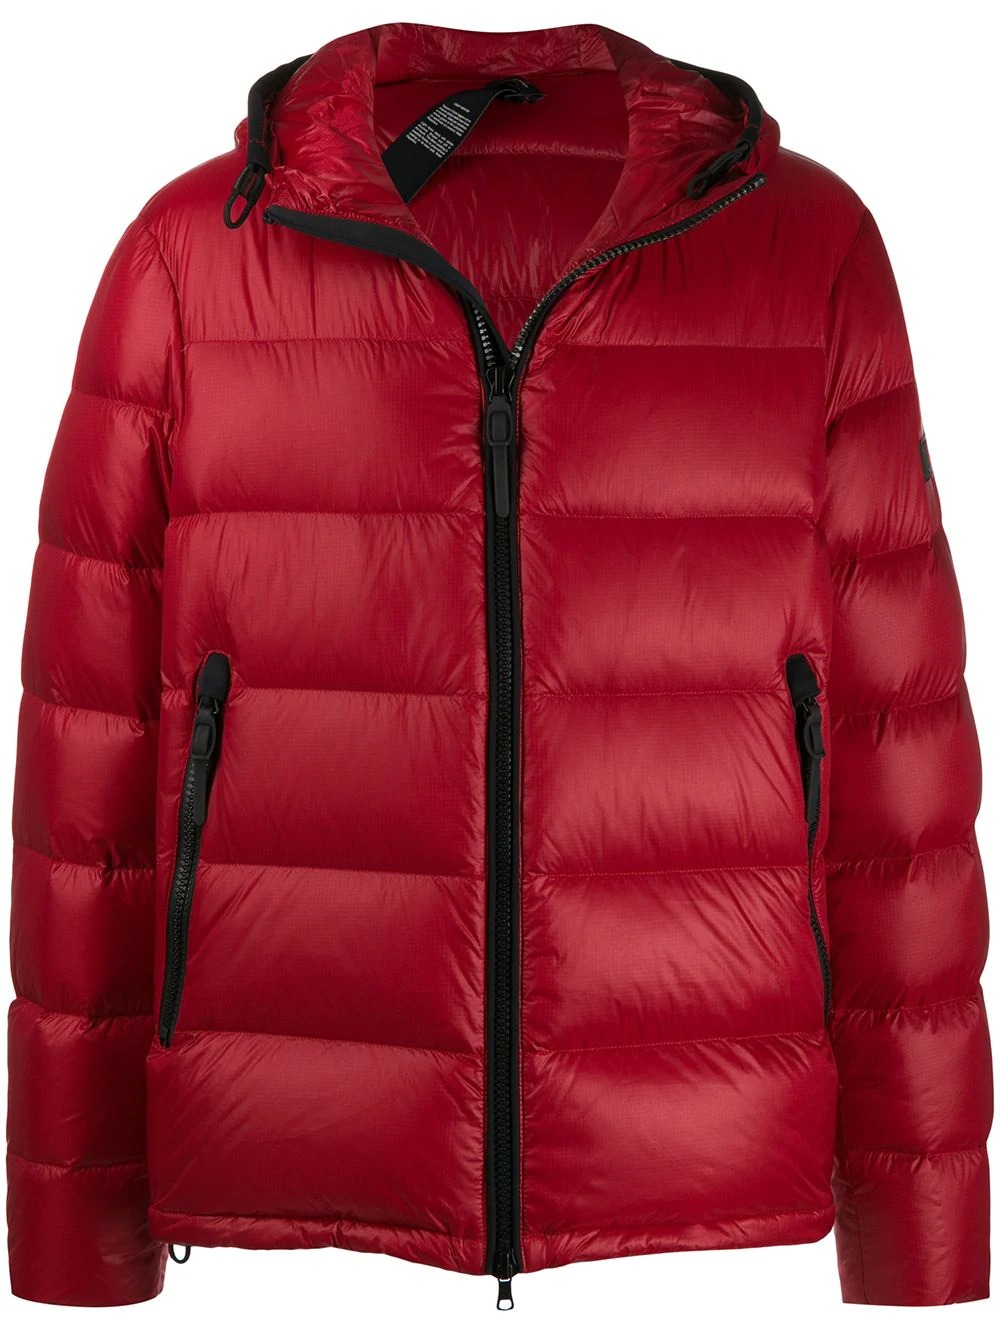 売り出し販促品 赤のダウンジャケットが冬コーデをリフレッシュするのに使える  唯一のサイト-lxprecision.com